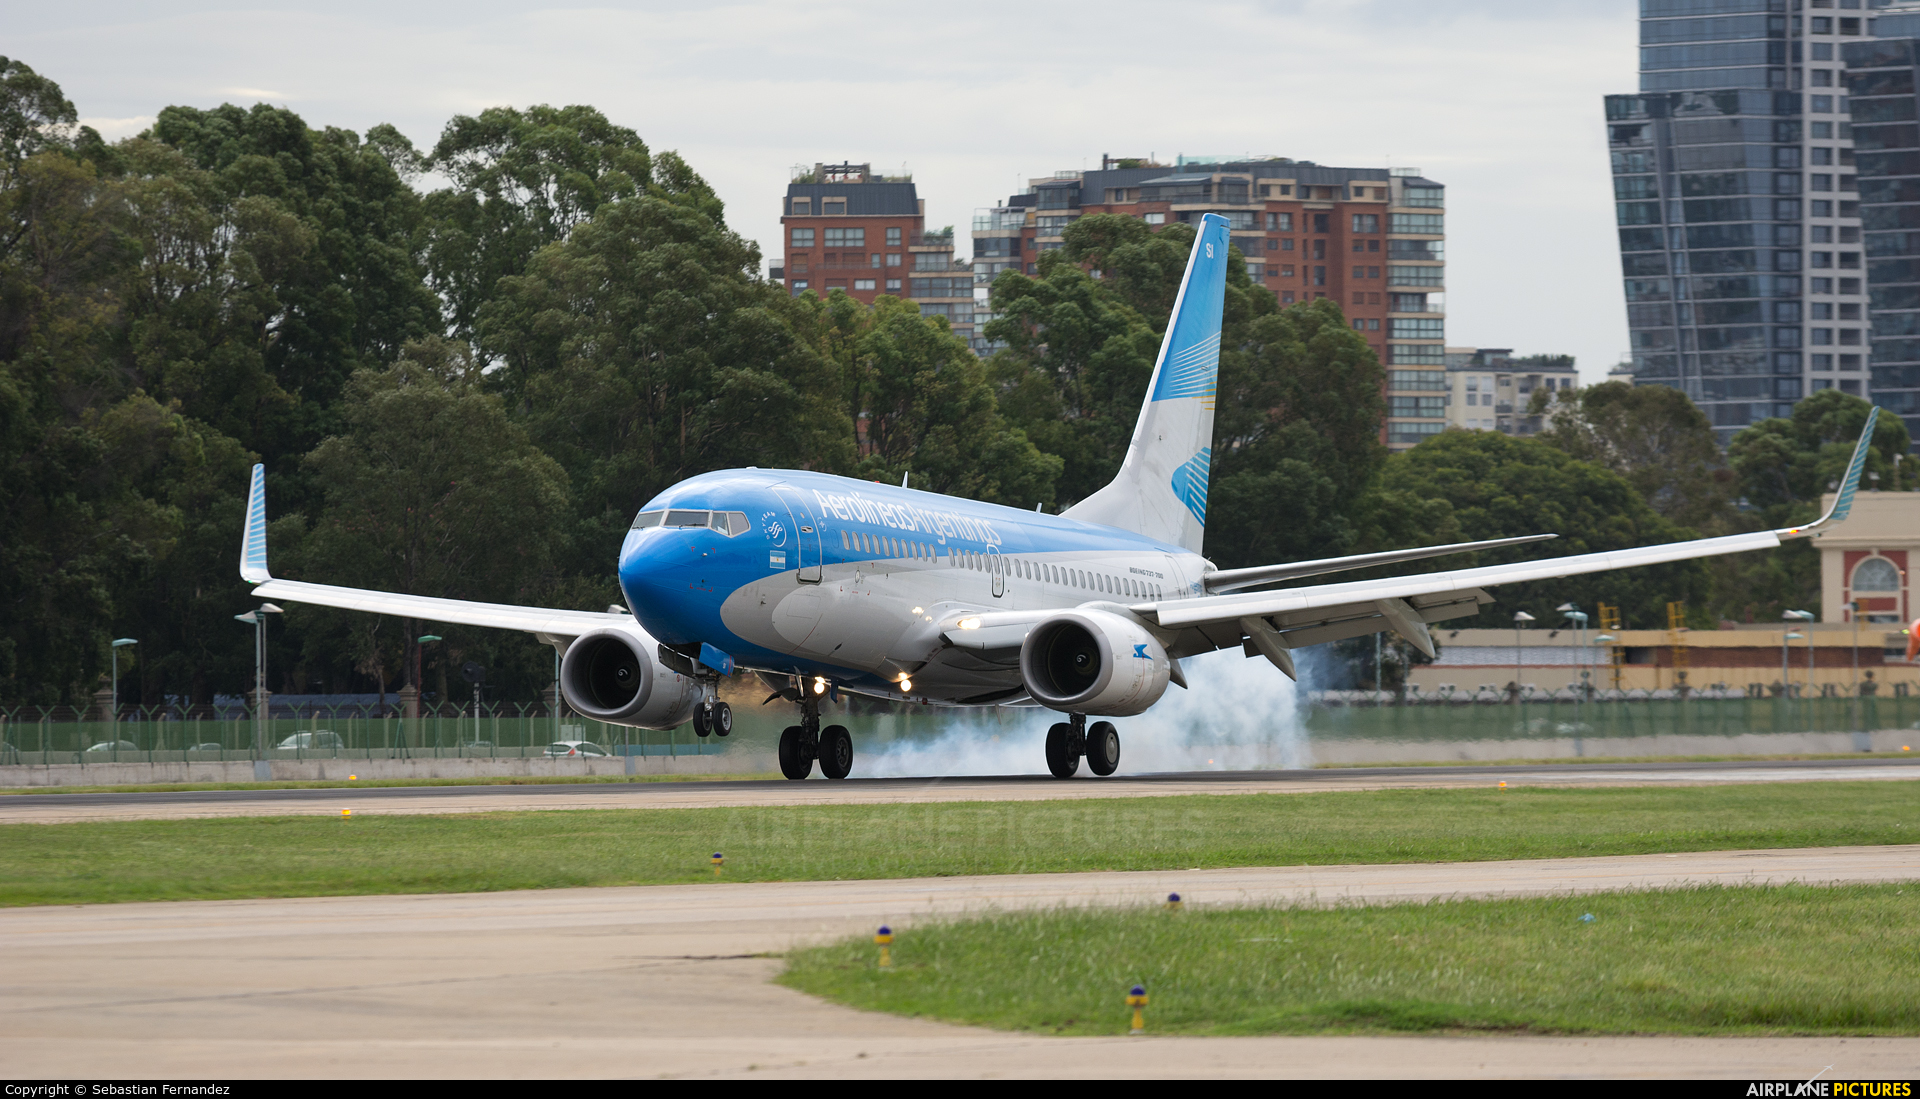 Aerolineas Argentinas LV-CSI aircraft at Buenos Aires - Jorge Newbery